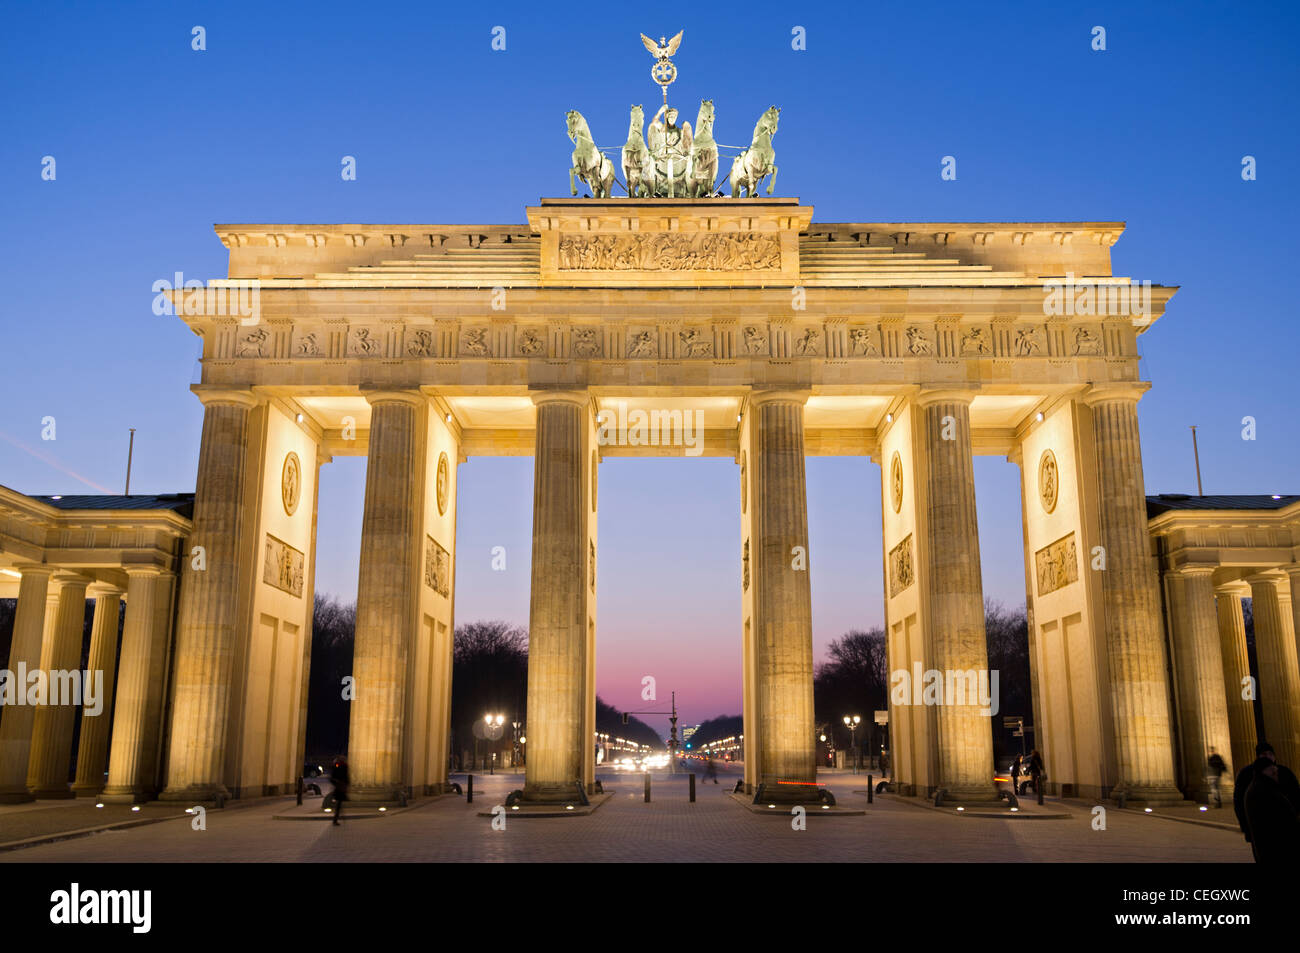 Vue de la porte de Brandebourg dans la nuit à Berlin Allemagne Banque D'Images